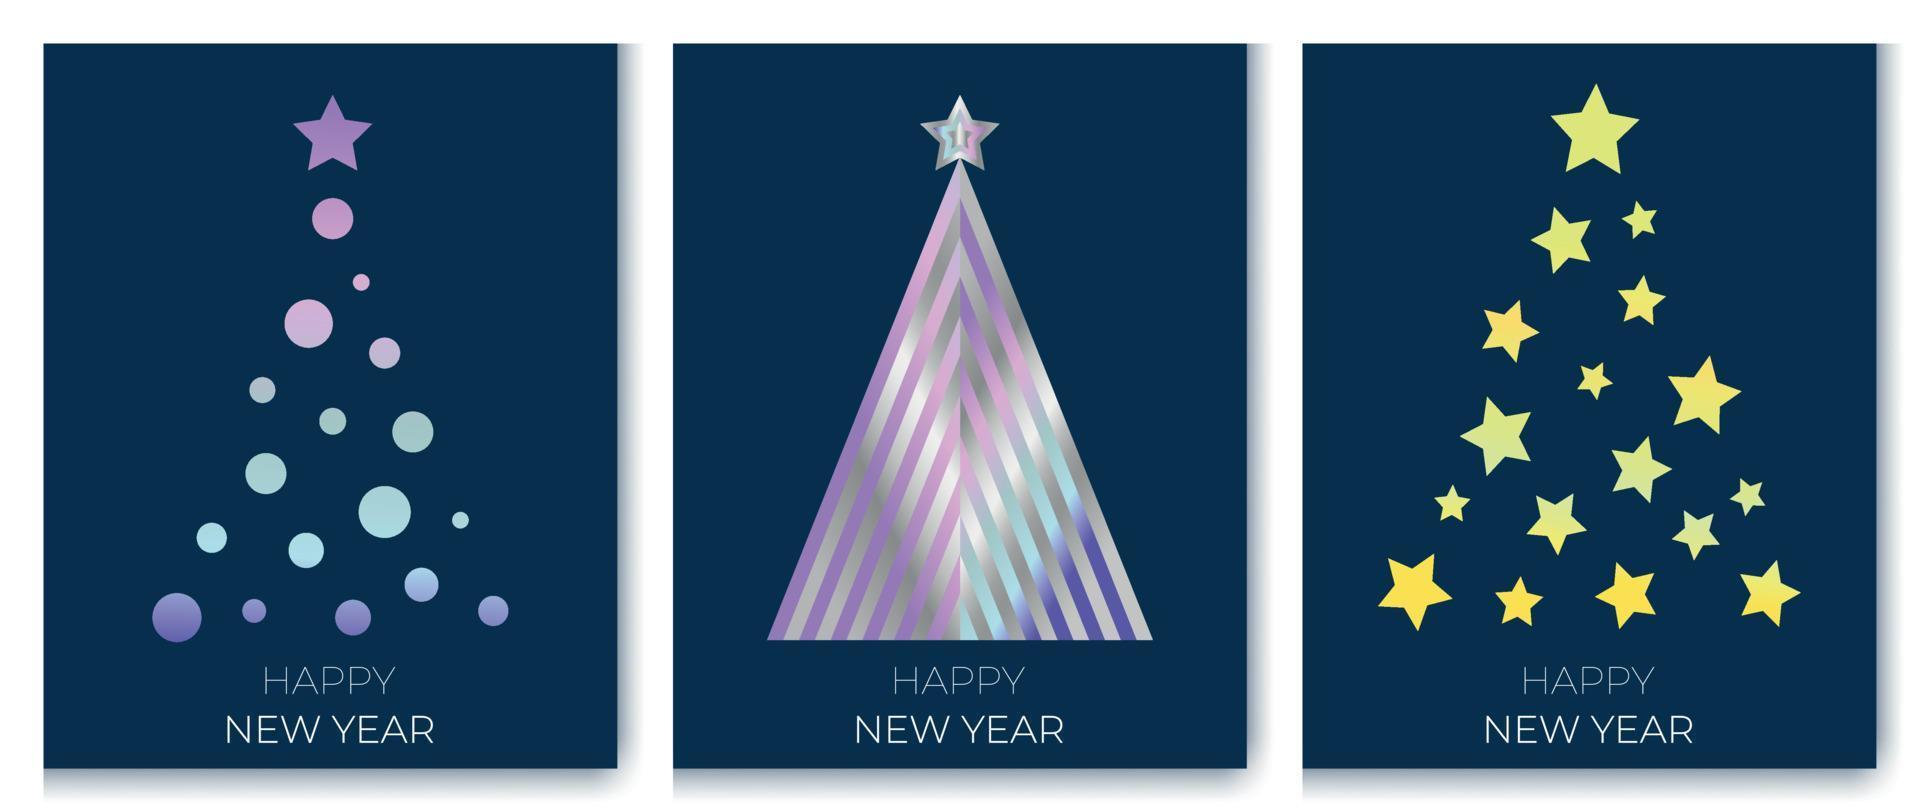 buon natale e felice anno nuovo set di carte moderne. elementi di design dell'albero di Natale testo di saluto su sfondo blu illustrazione vettoriale